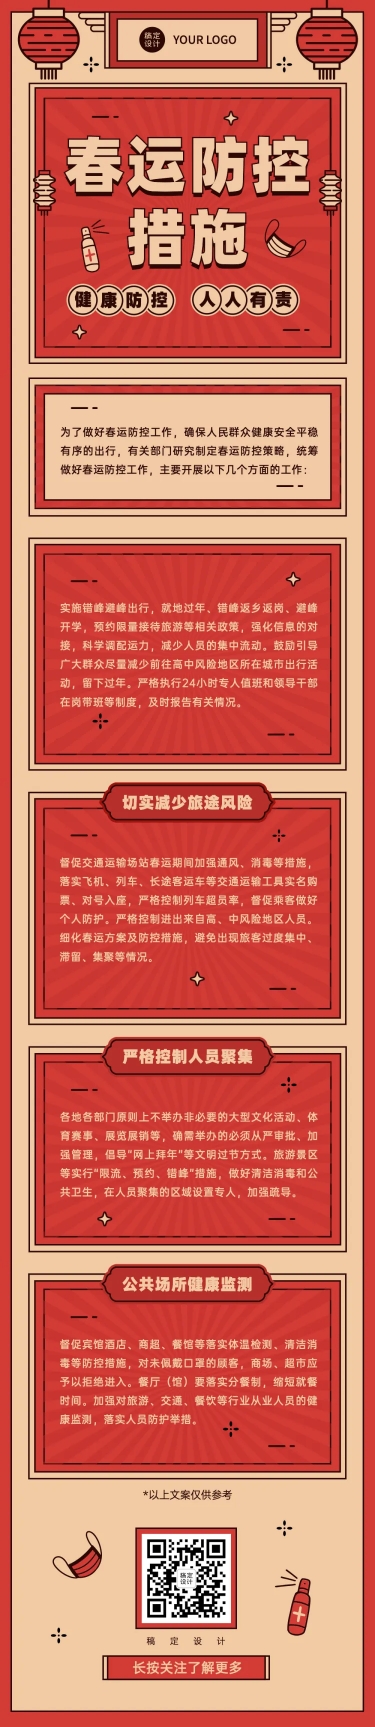 春节疫情防控春运宣传新年政策措施通知融媒体文章长图